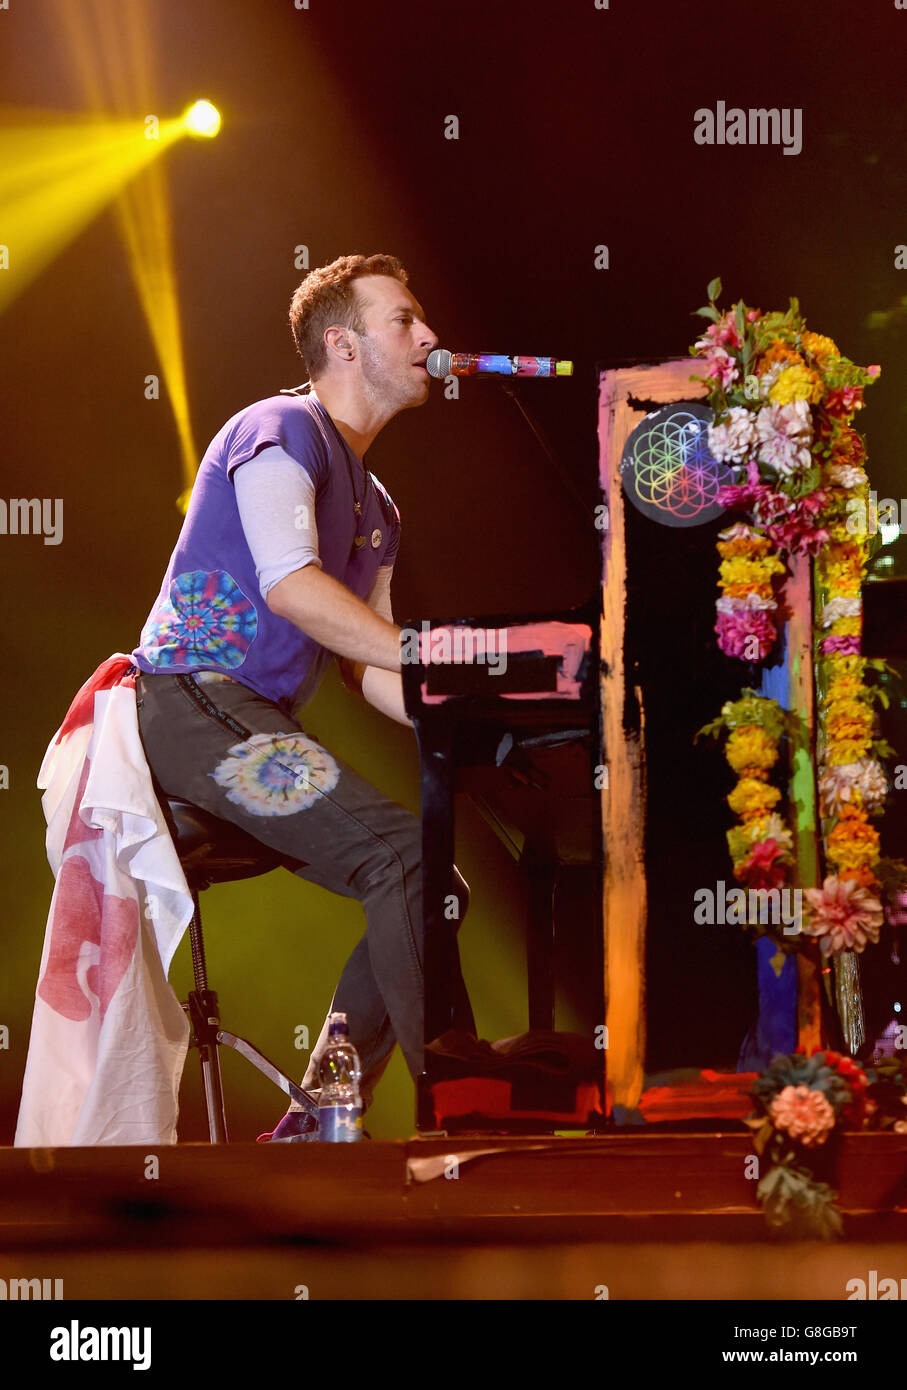 LONDON, ENGLAND - 28 Juni: Chris Martin von Coldplay führt auf der Bühne während der Sentebale Konzert im Kensington Palace am 28. Juni 2016 in London, England. Sentebale wurde von Prinz Harry und Prinz Seeiso von Lesotho vor über zehn Jahren gegründet. Es hilft, die schwachen und HIV-positive Kinder von Lesotho und Botsuana. (Foto: Tabatha Feuerwehrmann/Getty Images) Stockfoto